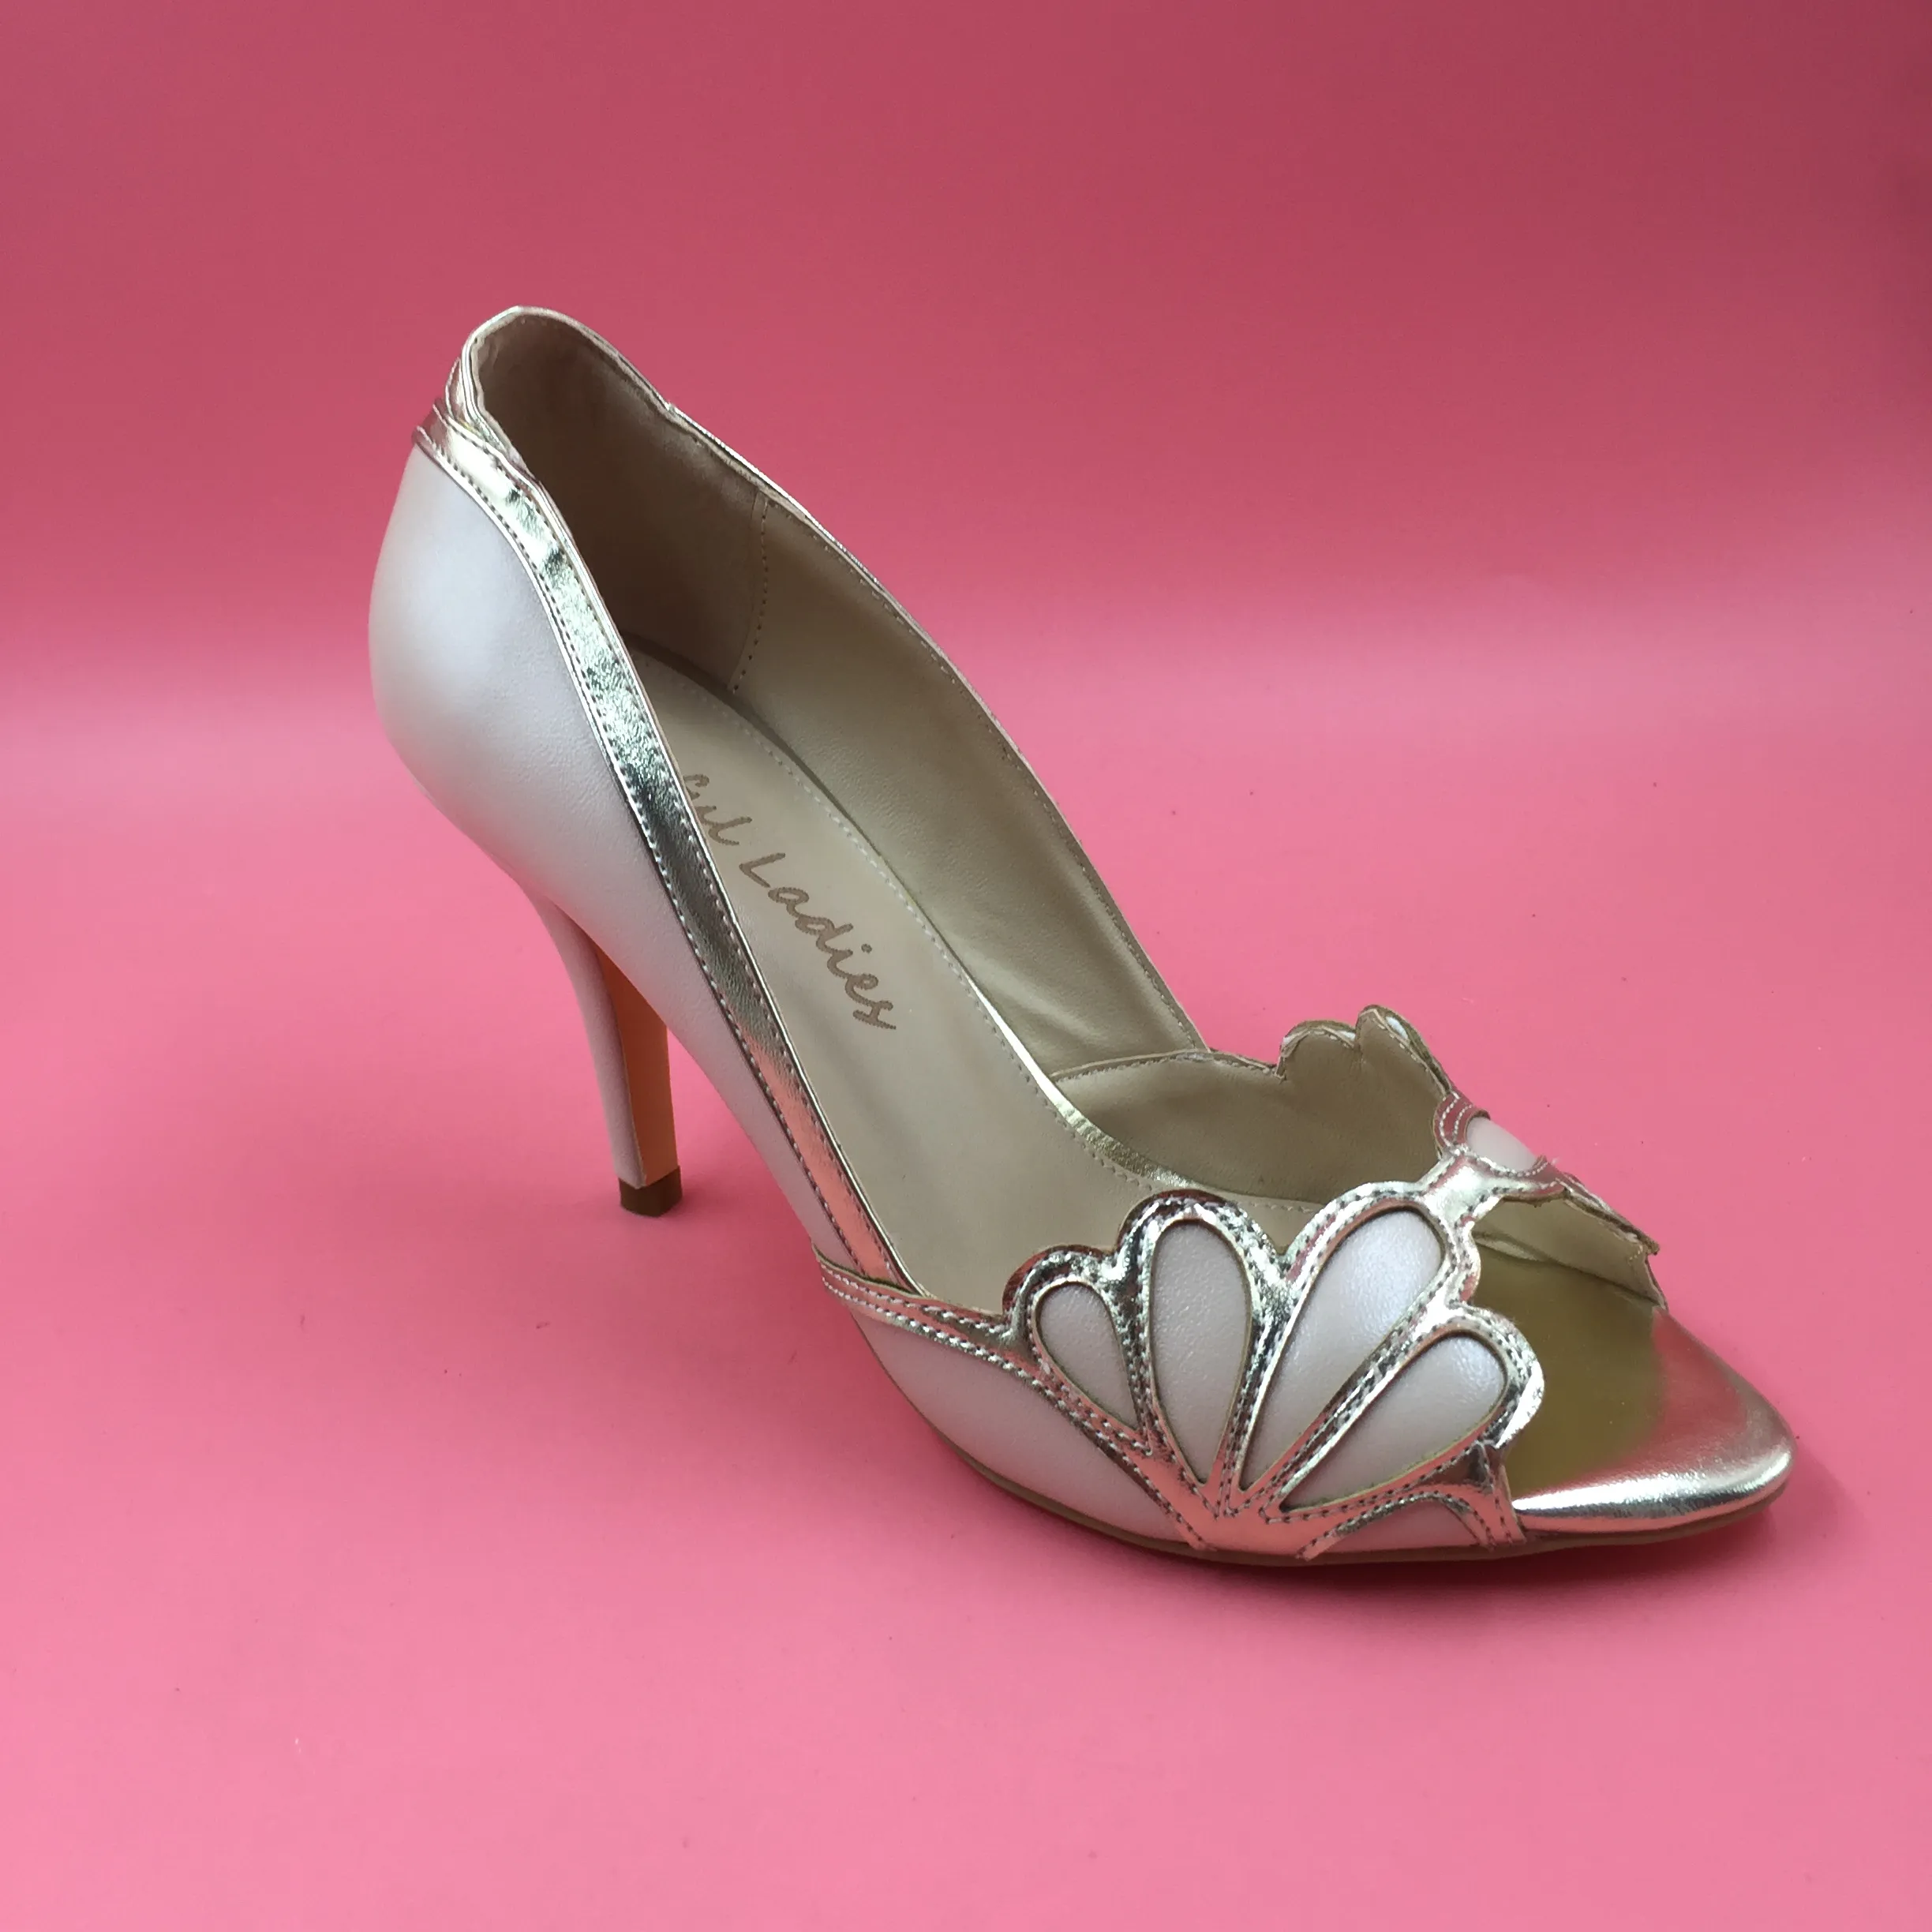 Zapatos de boda de color azul real 2016 Vintage nupcial Isabella tacón festoneado gatito PU Peep Toe sandalias hechas a medida bombas zapatos de fiesta elegantes y atractivos